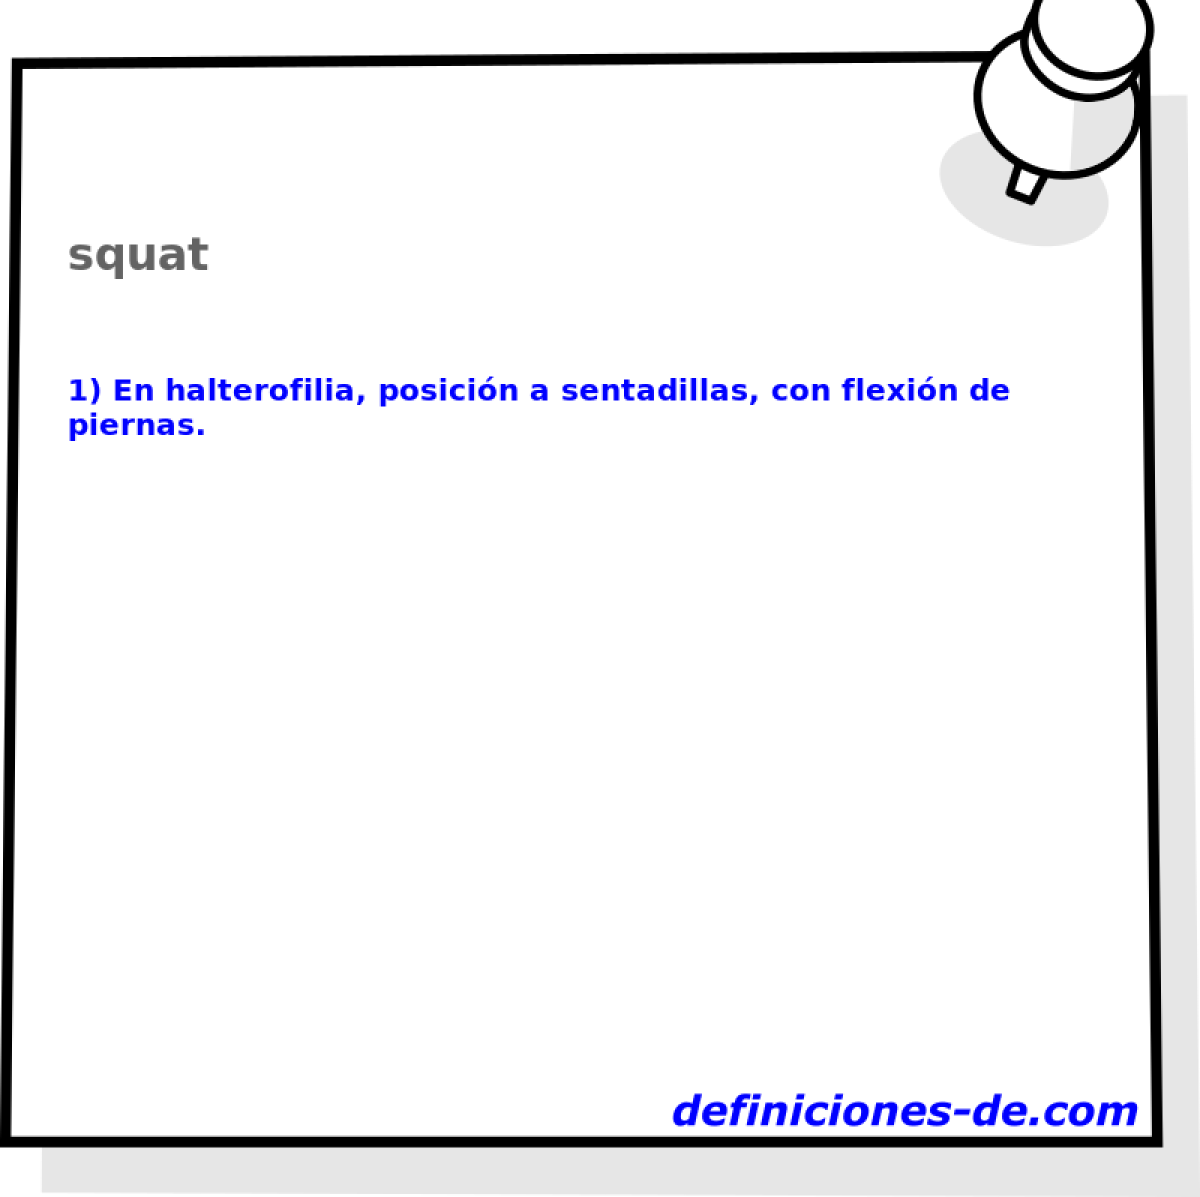 squat 